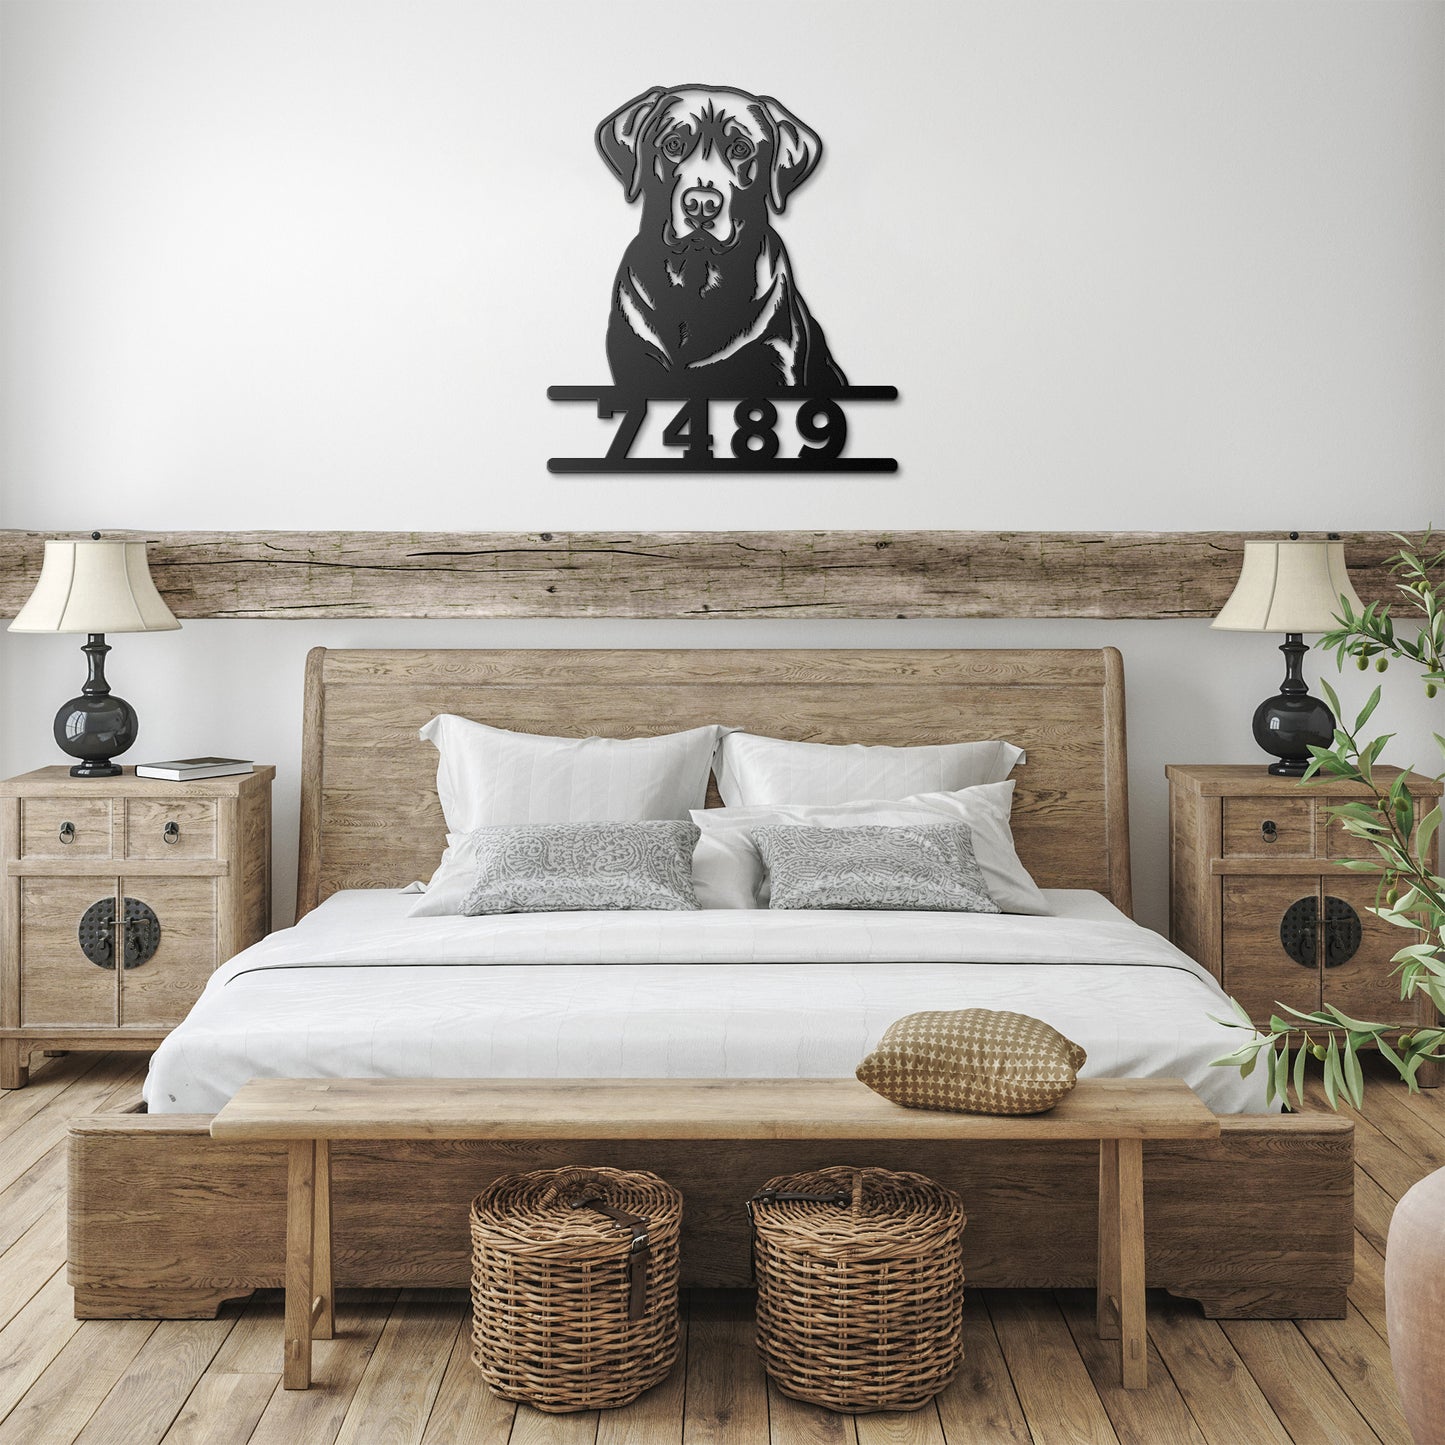 Personalized Labrador Retriever Metal Art Sign